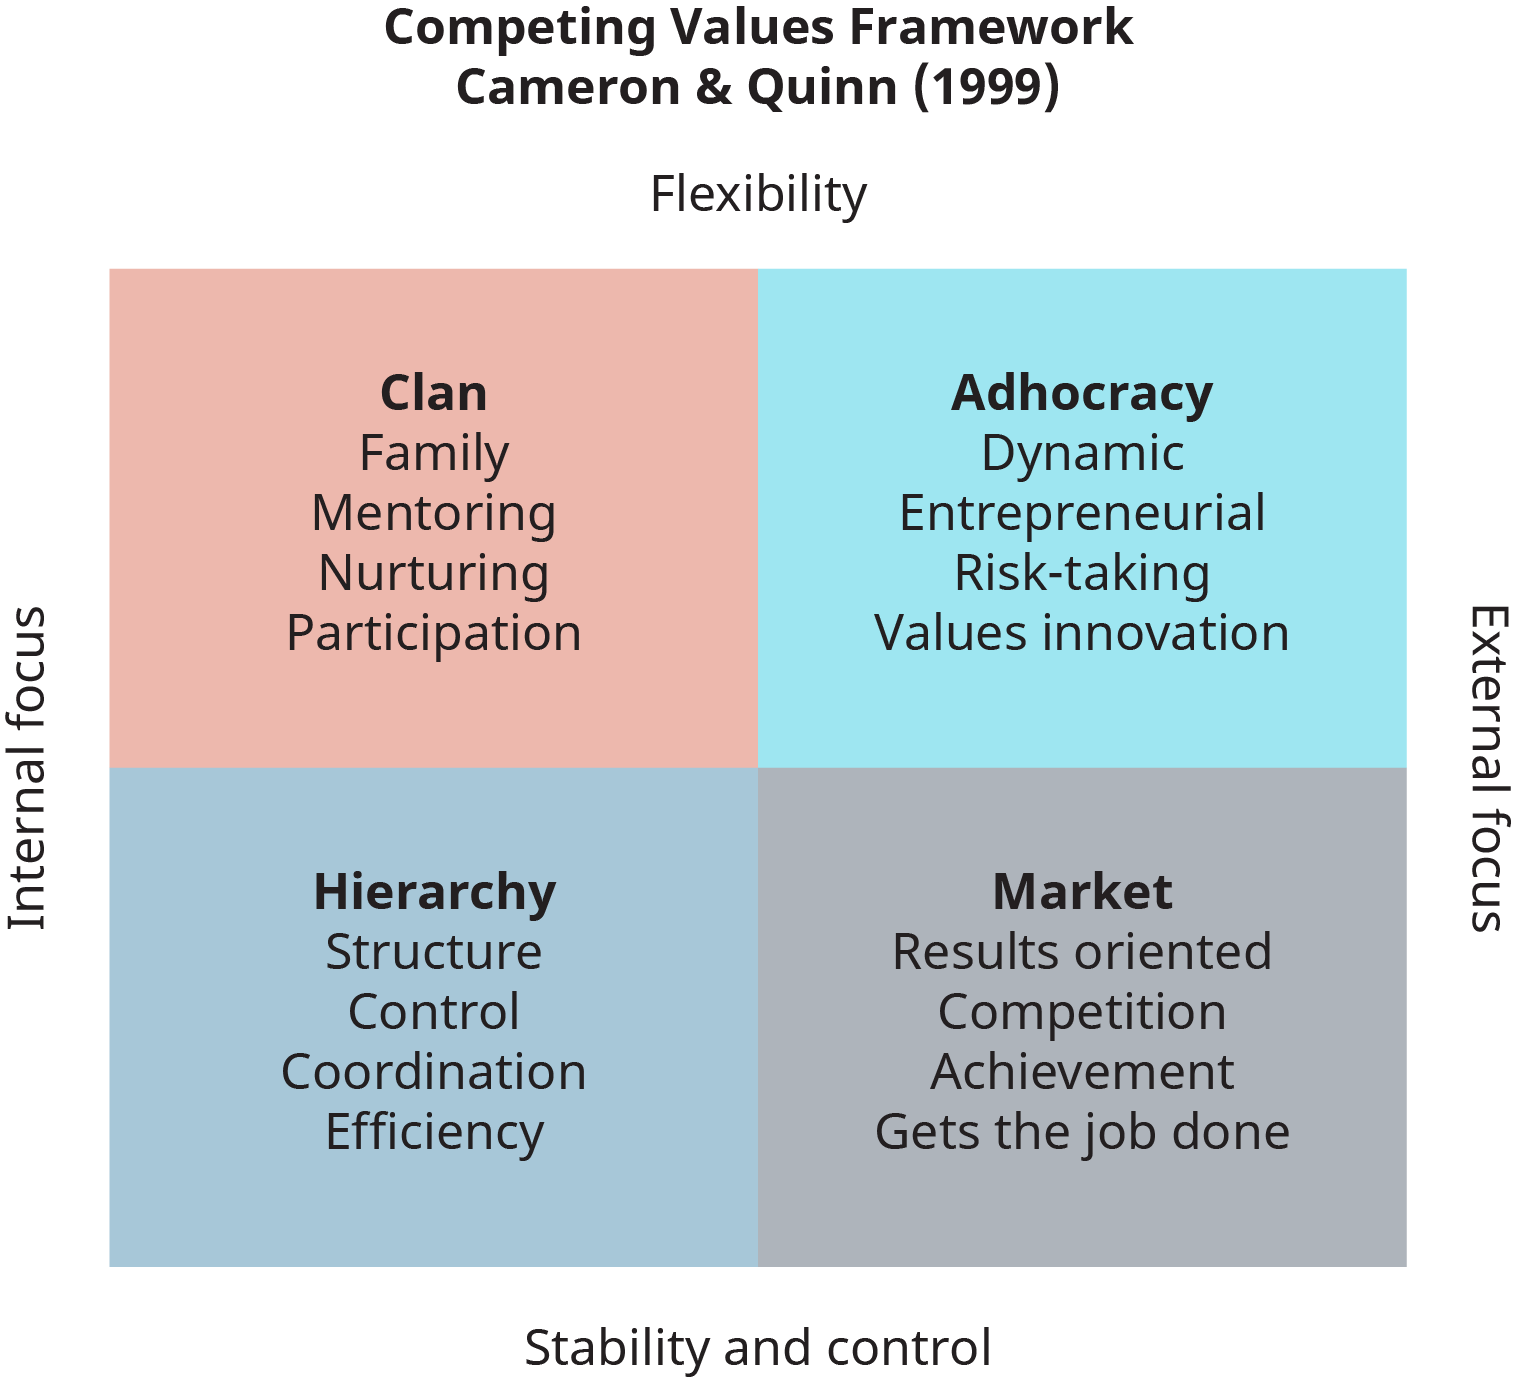 رسم بياني يوضح إطار القيم المتنافسة للتقييم الثقافي للمنظمات، كما قدمه كاميرون وكوين في عام 1999.